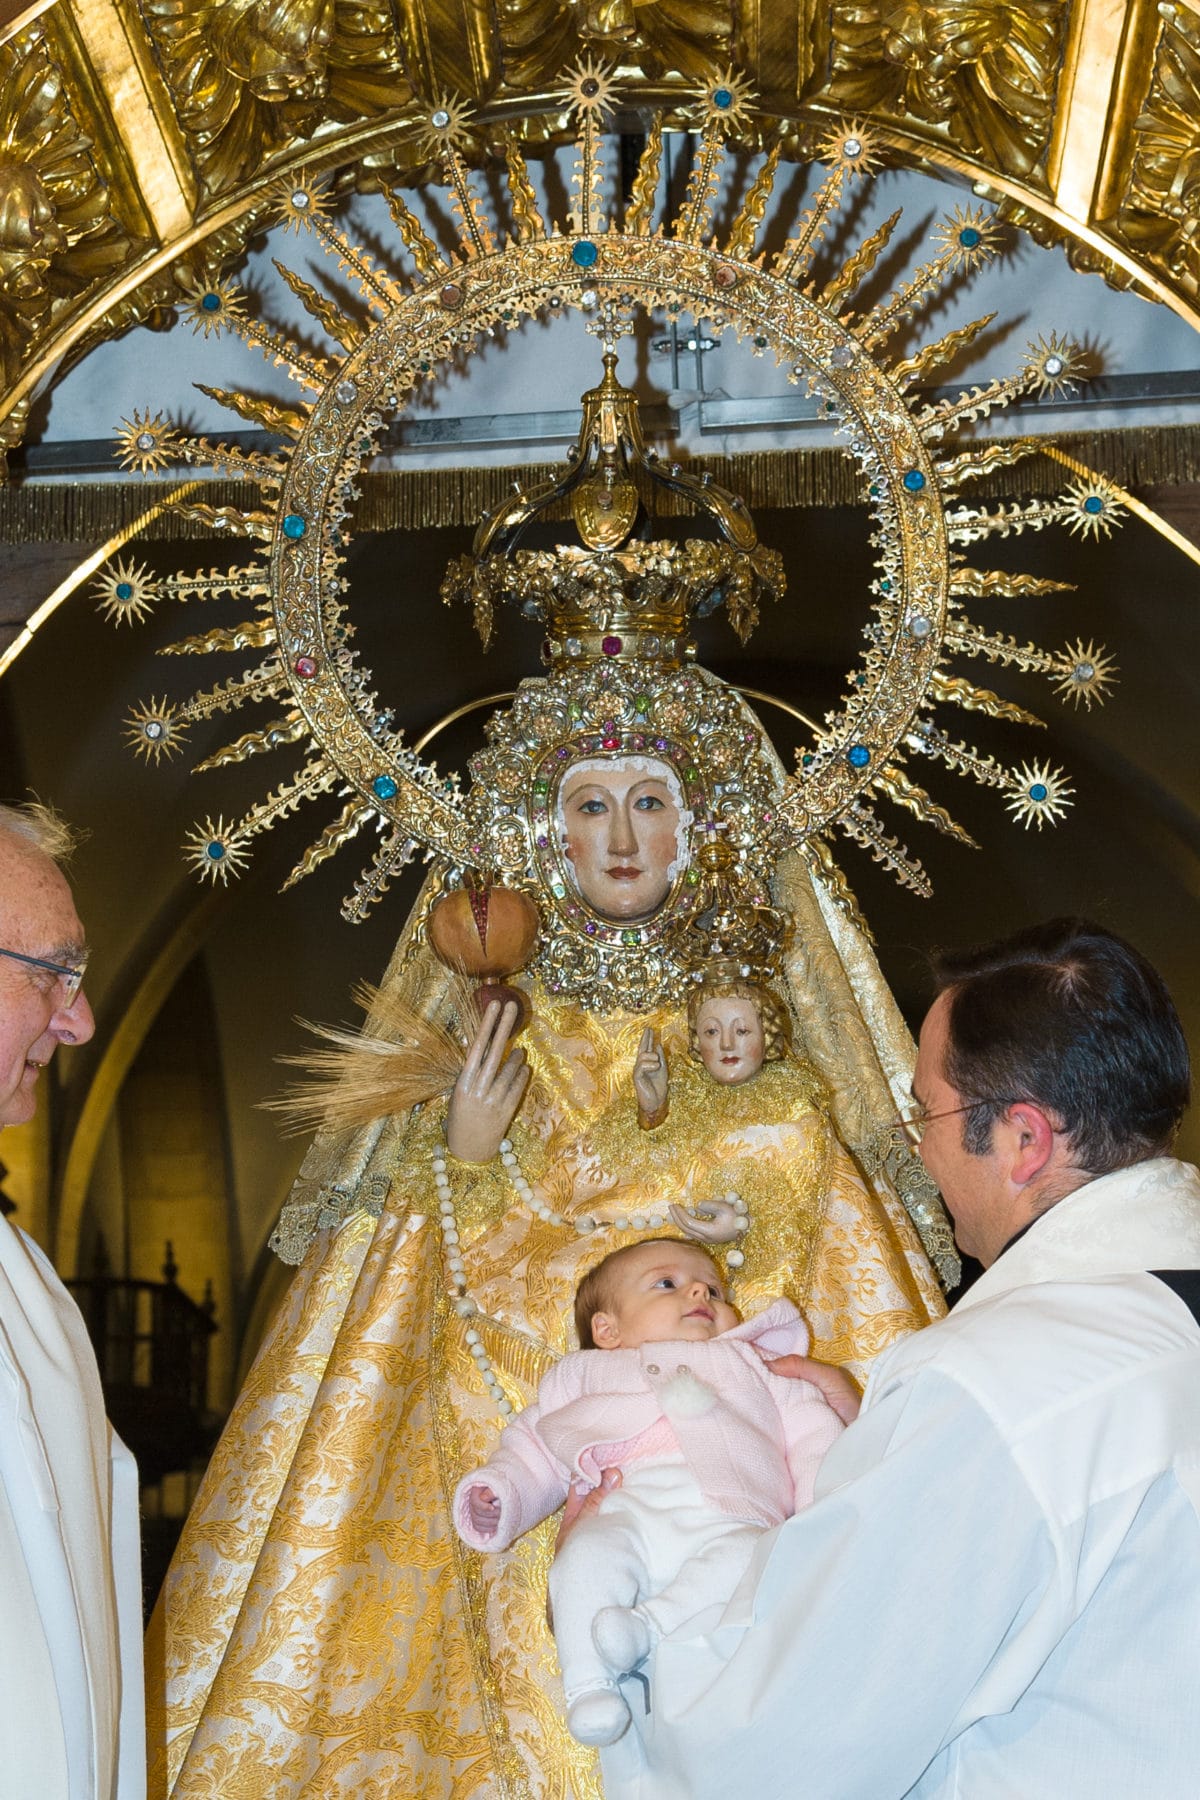 70 niños y niñas pasan por el manto de la Virgen en un acto "muy emotivo y alegre" 3